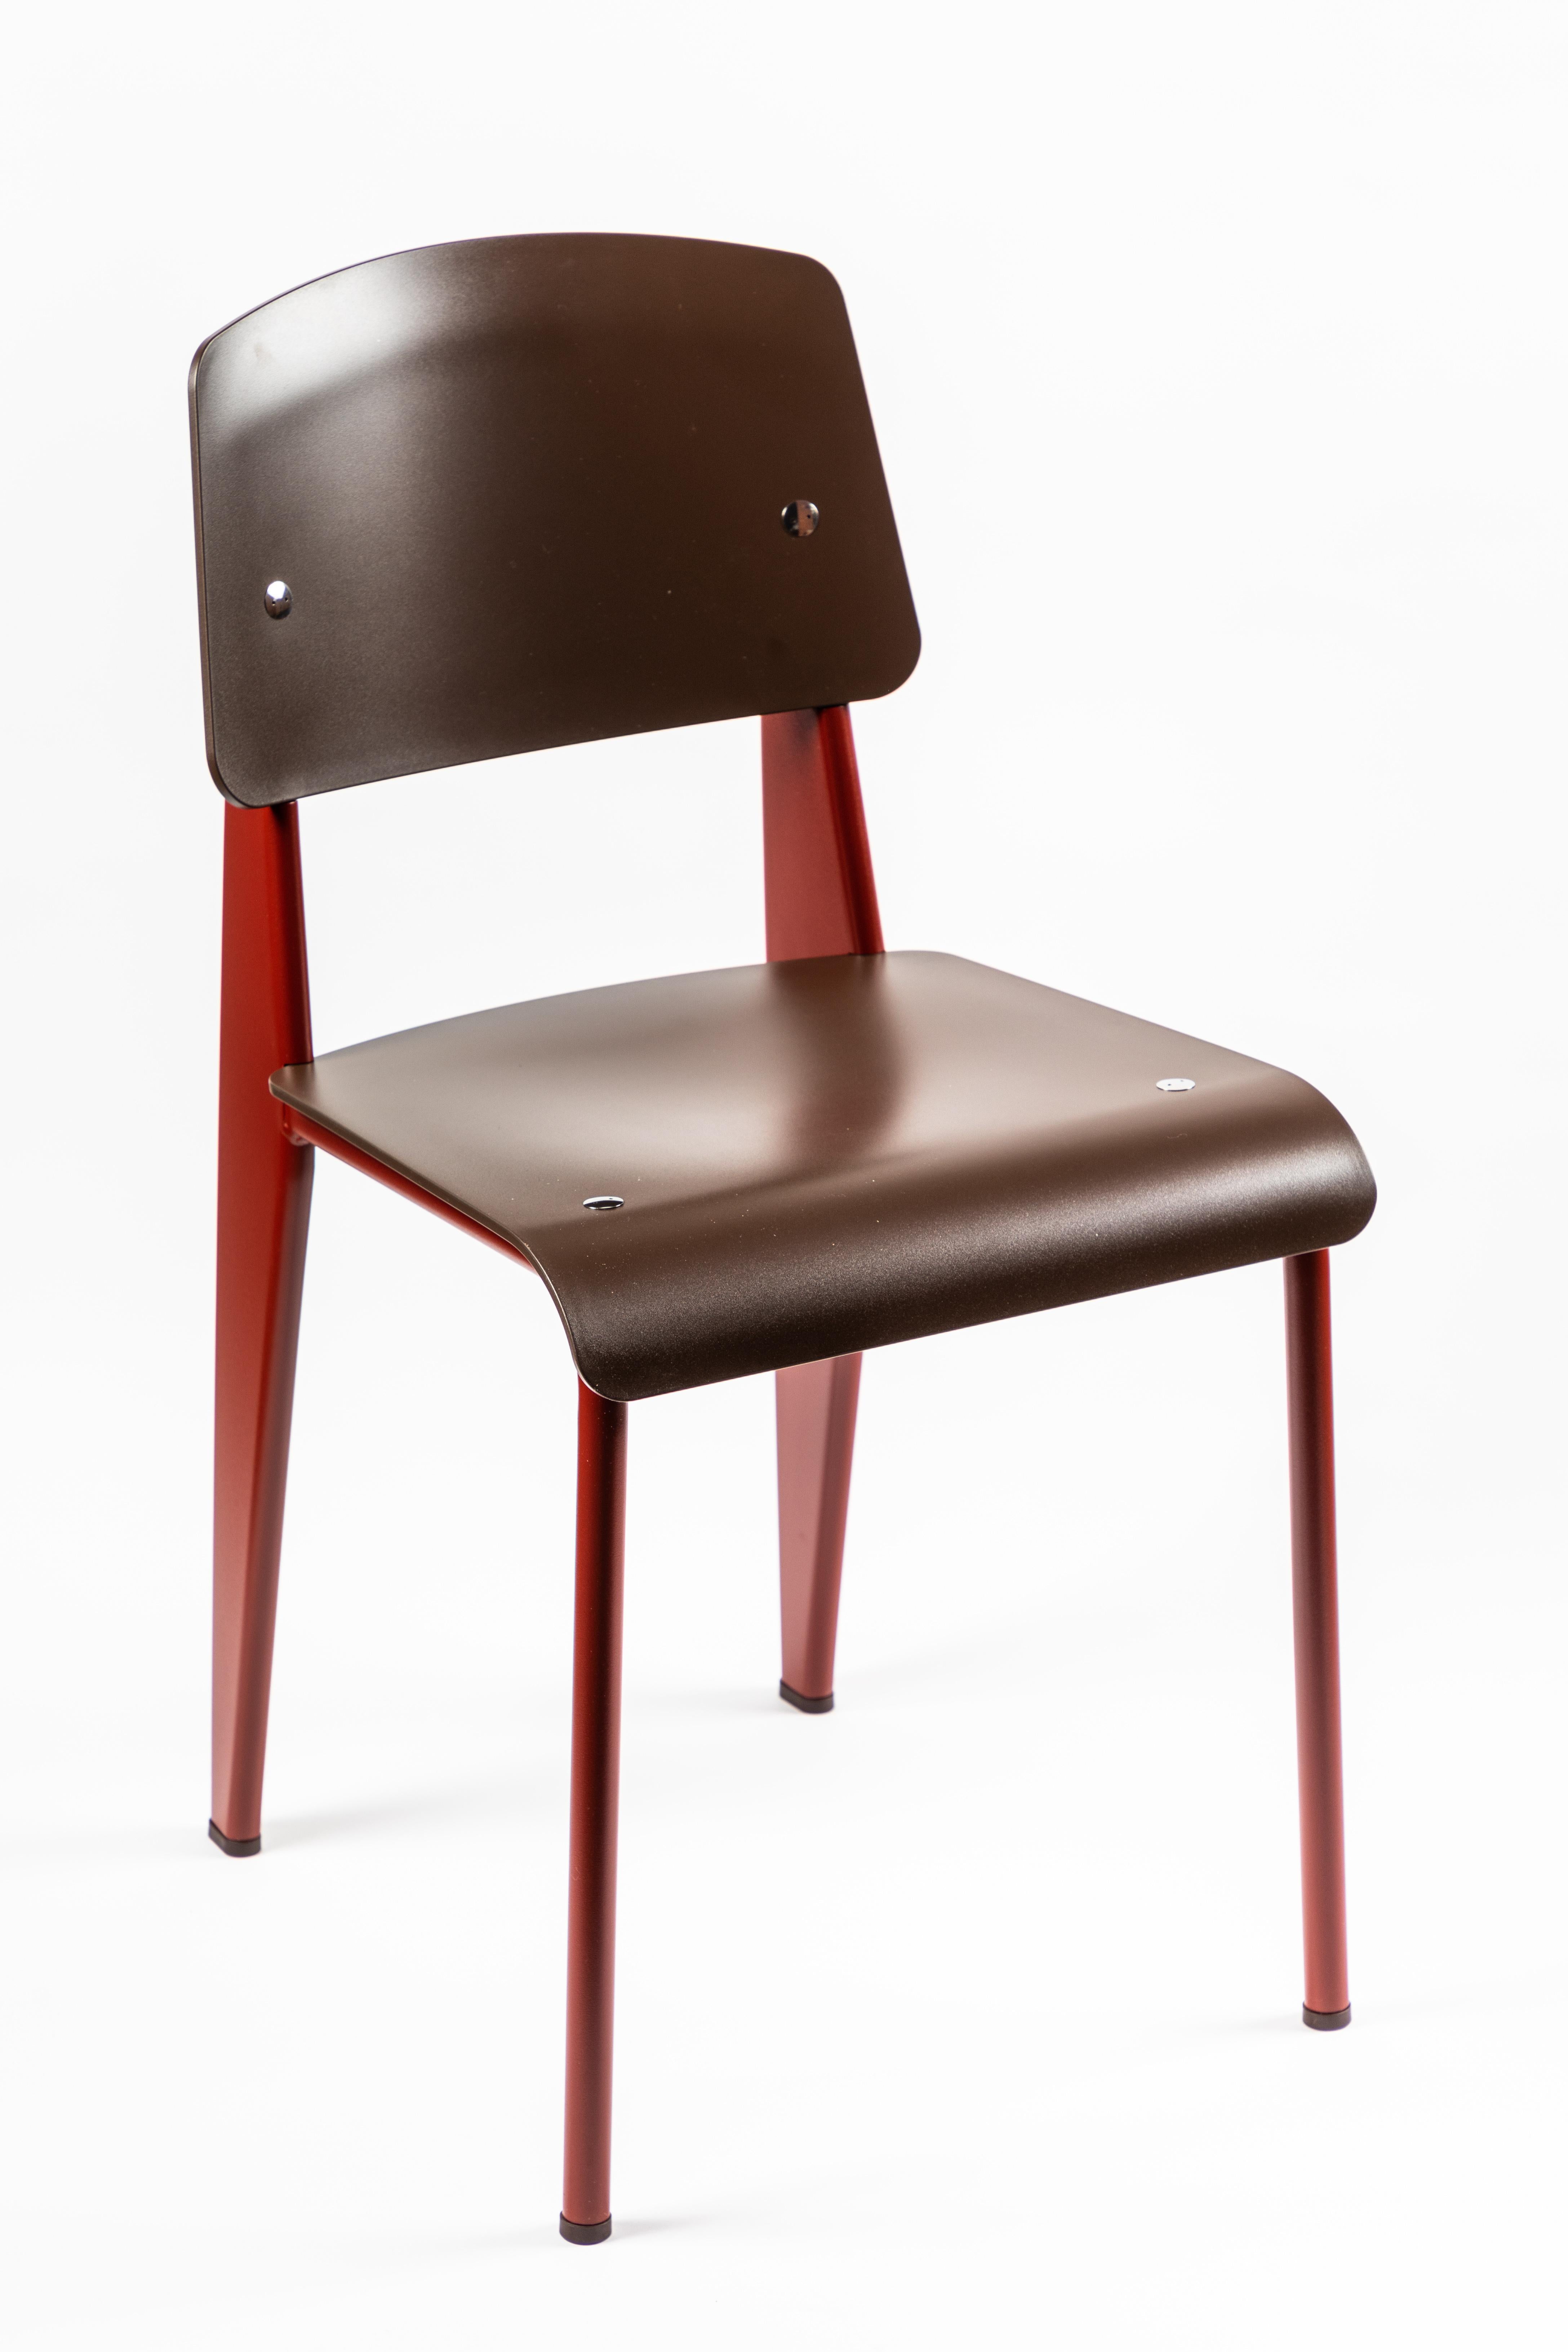 6 Stühle Jean Prouvé Standard SP in Teak Brown und Rot für Vitra (Schweizerisch)